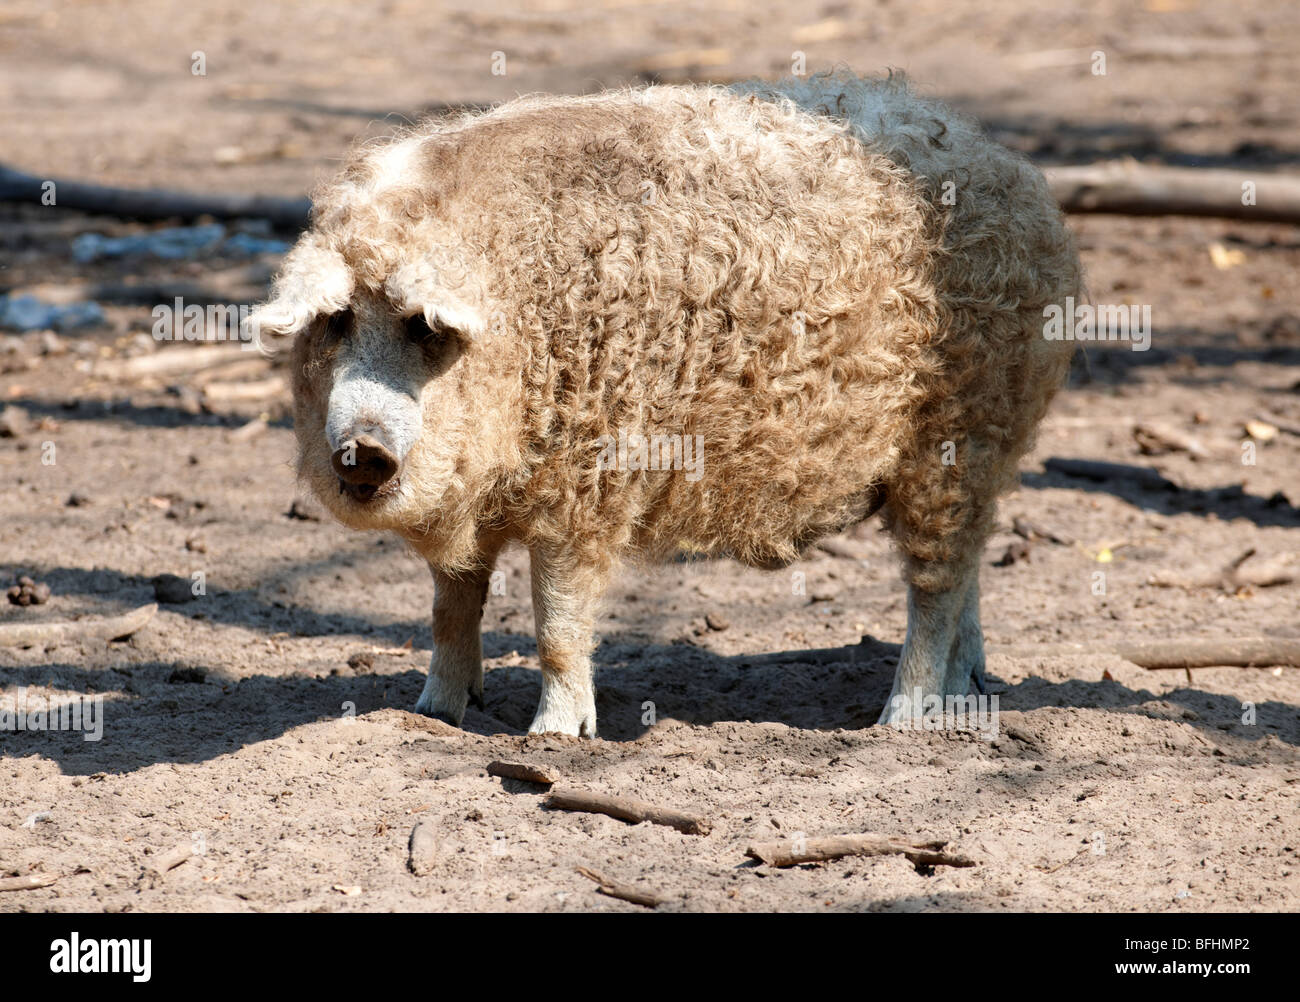 Mangalica-Schwein - ein ungarischer seltene Rasse-Schwein, die eine Come back wegen die gesundheitlichen Eigenschaften von Fleisch macht. Ungarn Stockfoto